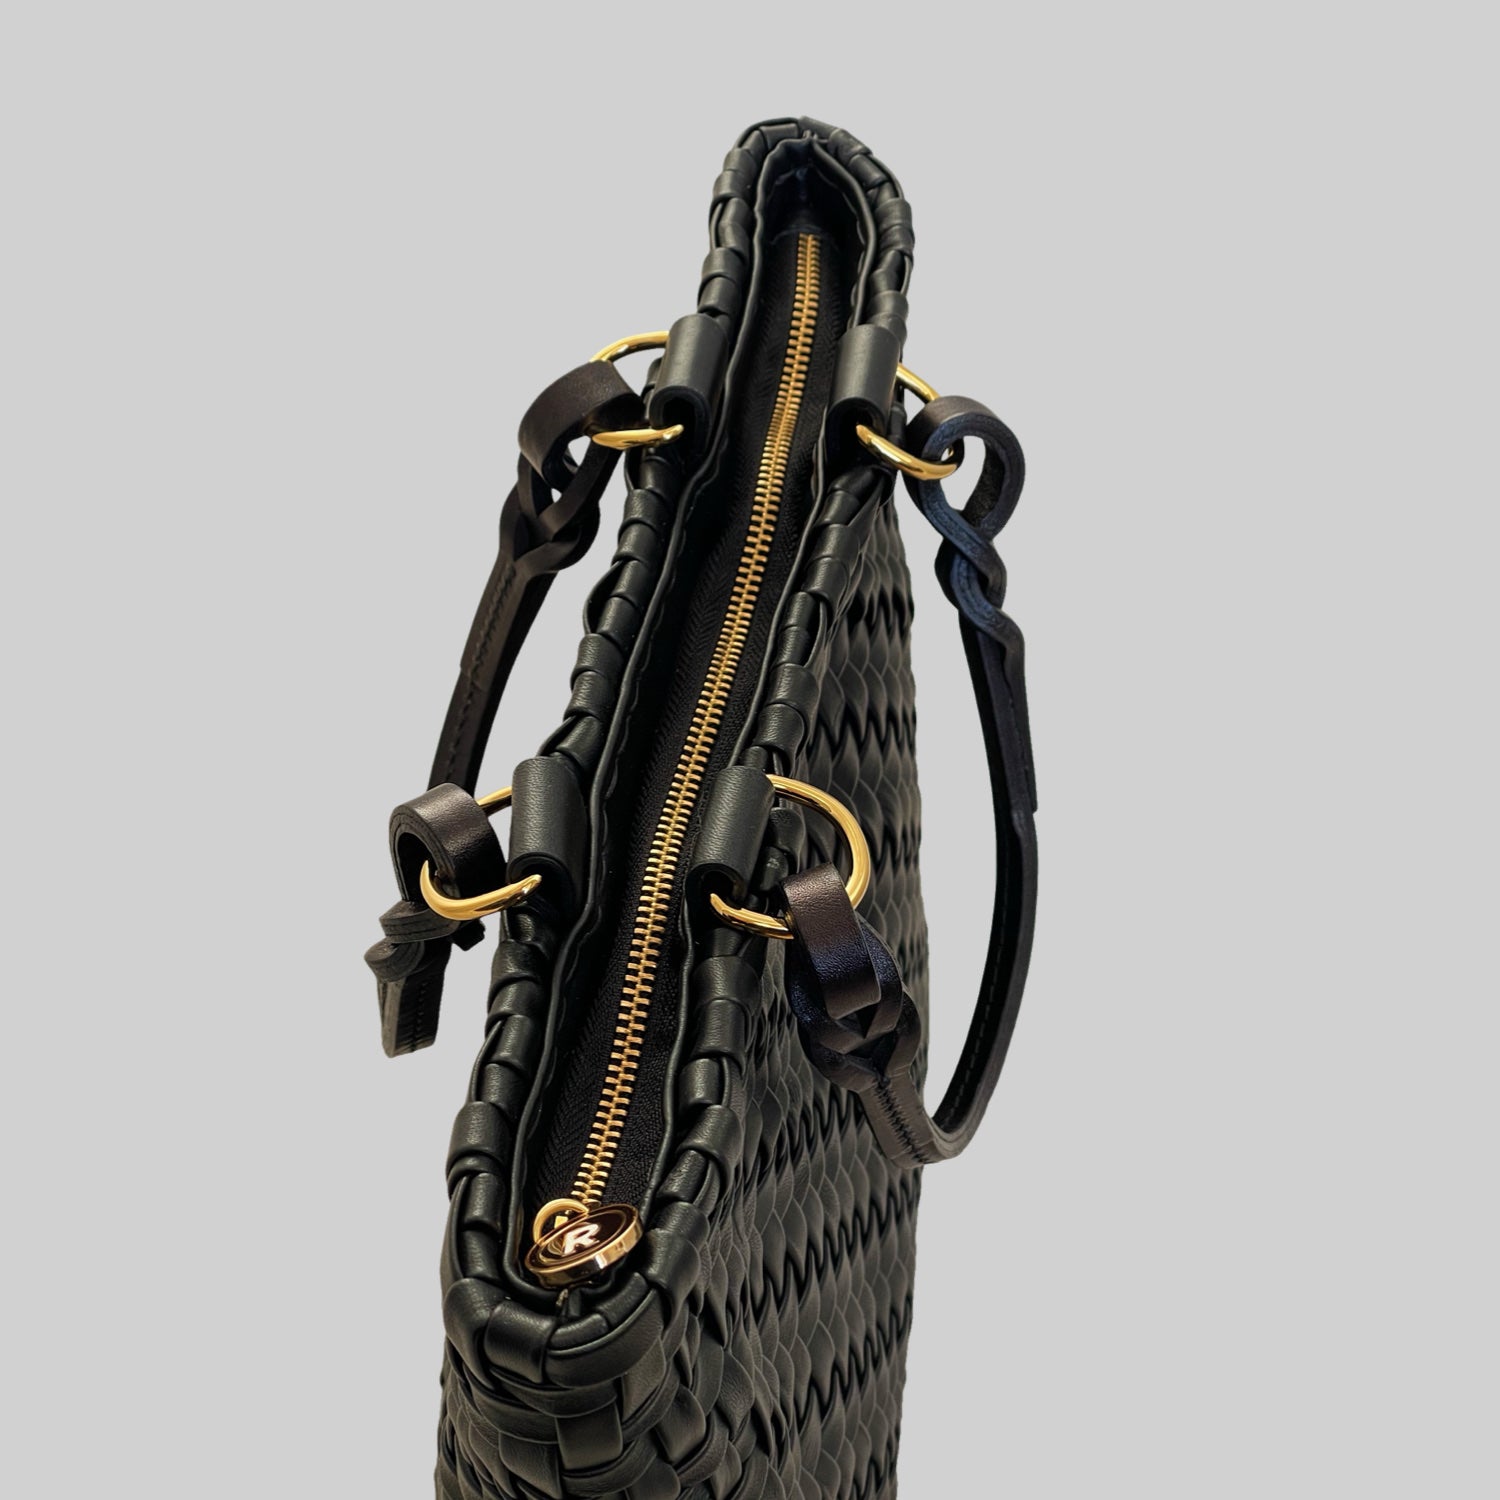  Ribichini Safari Lady-vesken i sort, med flettet lammeskinn og glidelås, kombinerer stil og funksjonalitet på en elegant måte.